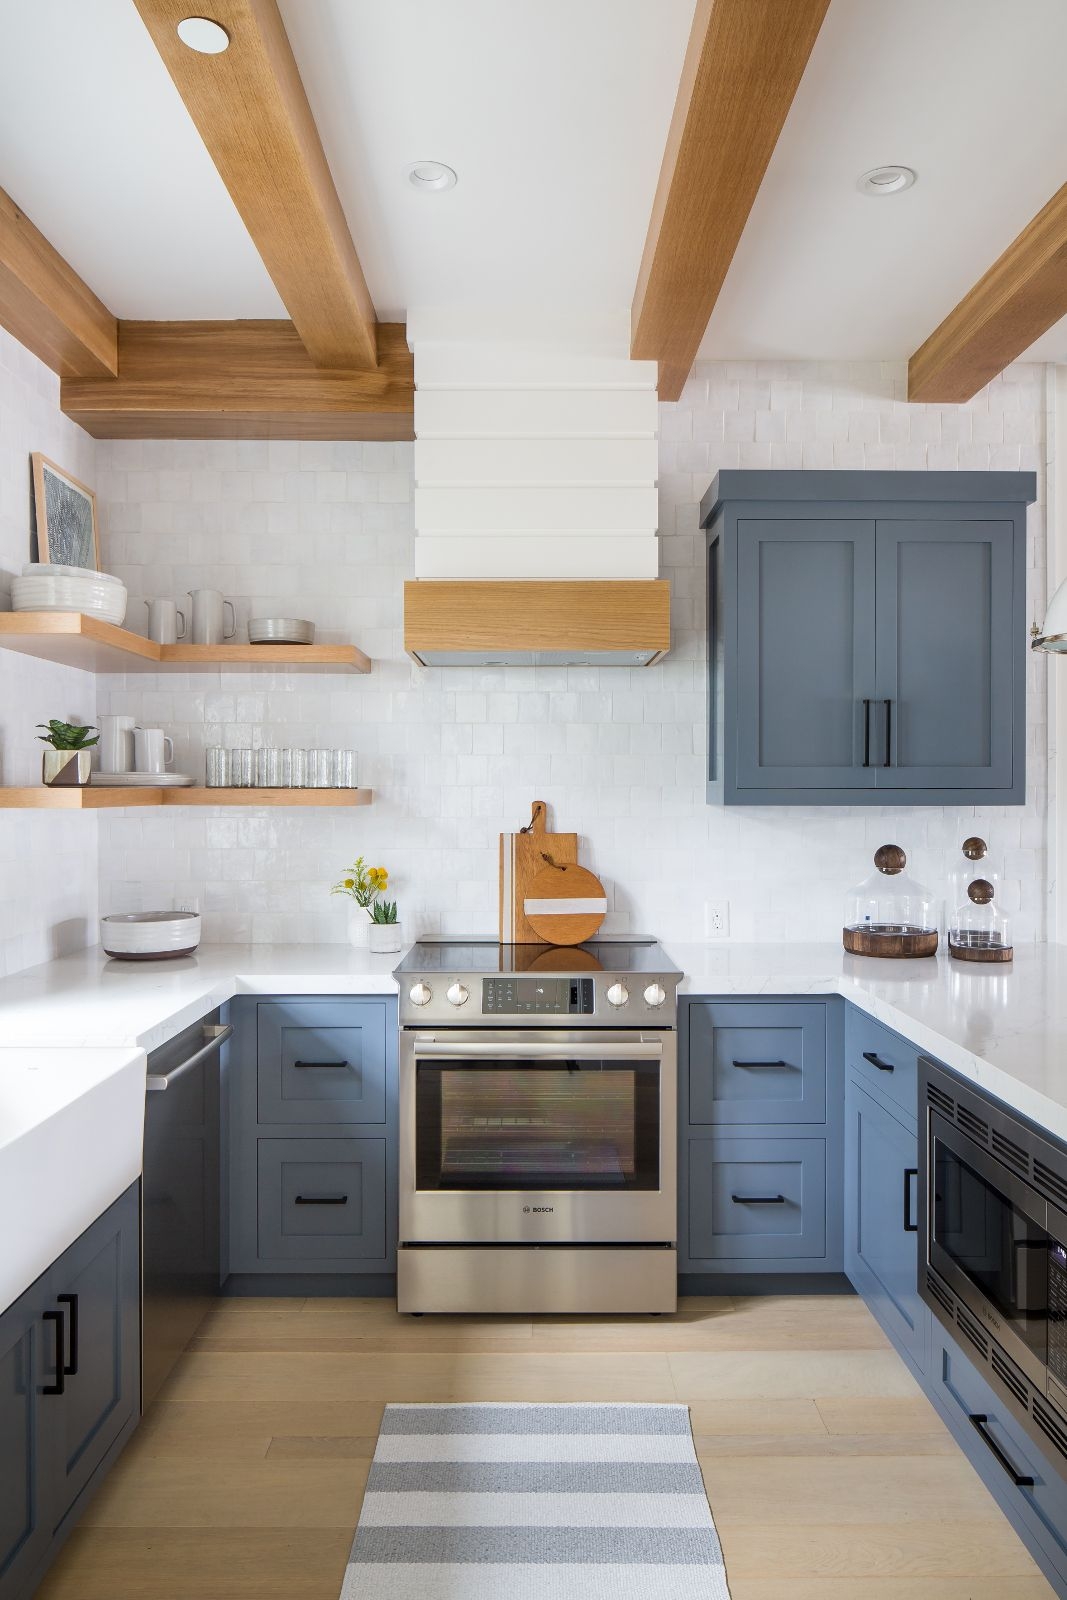 Hệ tủ bếp dưới có thể nên lựa chọn gam màu xanh xám, màu mang đến sự yên tĩnh, ấm cúng và hiện đại.